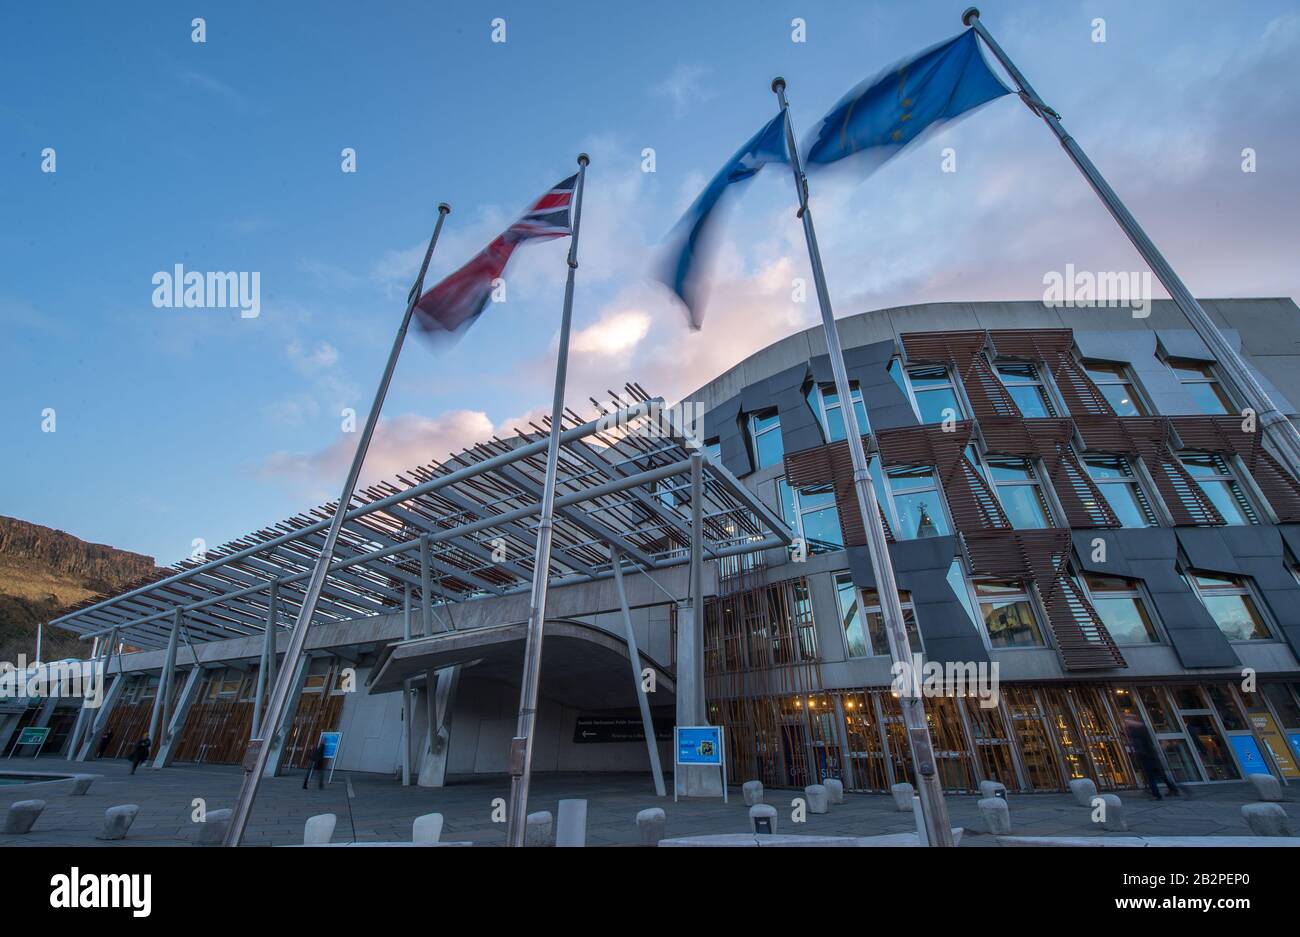 Édimbourg, Royaume-Uni. 3 mars 2020. Photo : les drapeaux à l'extérieur du Parlement écossais soufflent dans le vent. De gauche à droite se trouve l'Union Jack; Saltyre (Croix de St Andrews); le drapeau d'Europe. Le Parlement écossais a voté en faveur de la sortie du drapeau de l'UE en dehors du Parlement après que le Royaume-Uni a quitté l'UE le 31 janvier 2020. L'Écosse a voté à la majorité pour rester dans l'UE malgré le reste du Royaume-Uni qui a voté pour quitter l'UE. Le gouvernement écossais cherche des moyens de rejoindre l'UE. Crédit : Colin Fisher/Alay Live News Banque D'Images